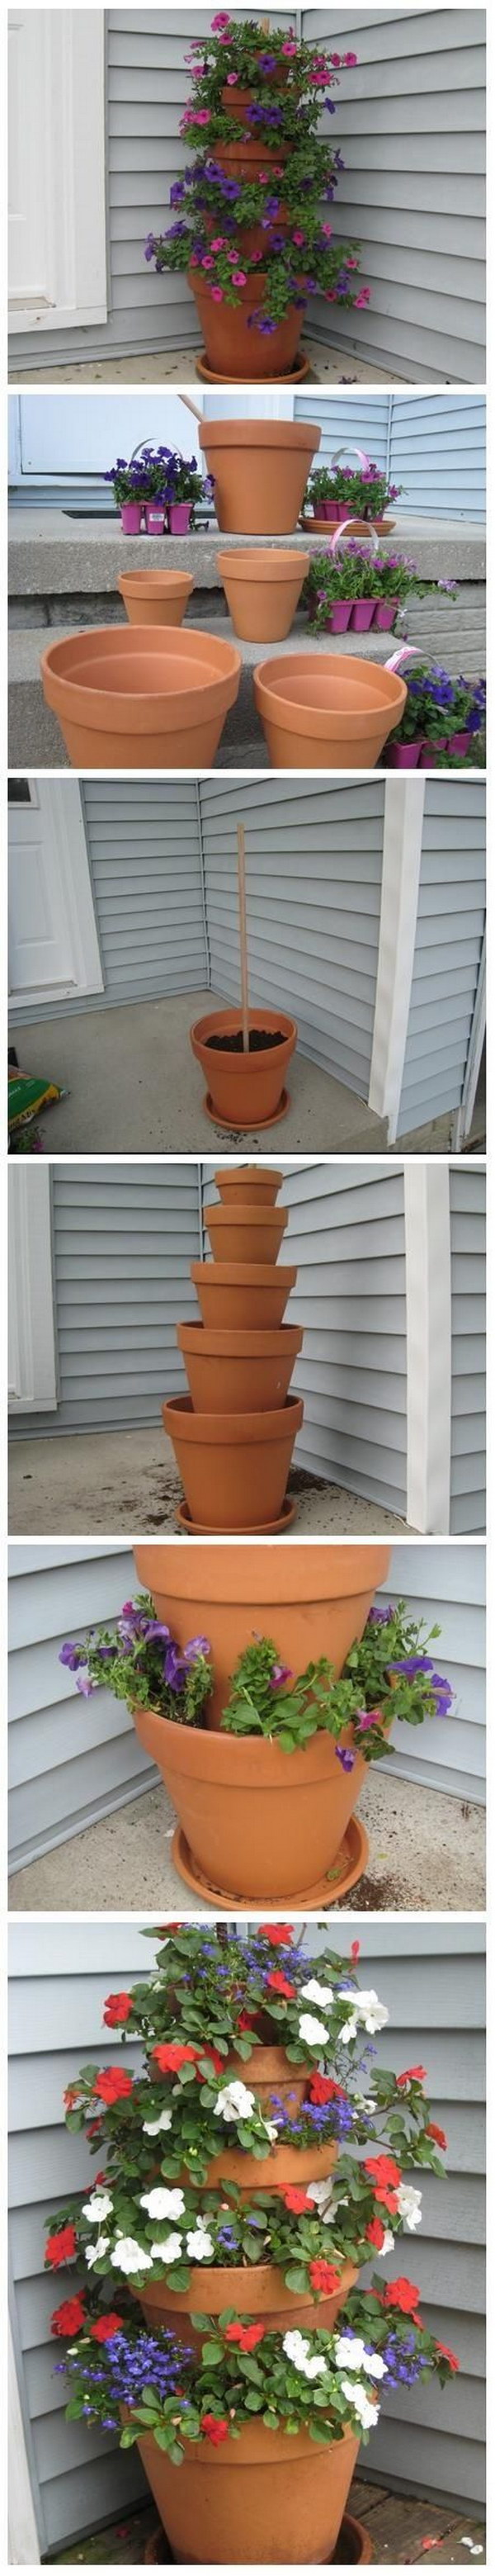 DIY Terra Cotta Pot Flower Tower Garden 